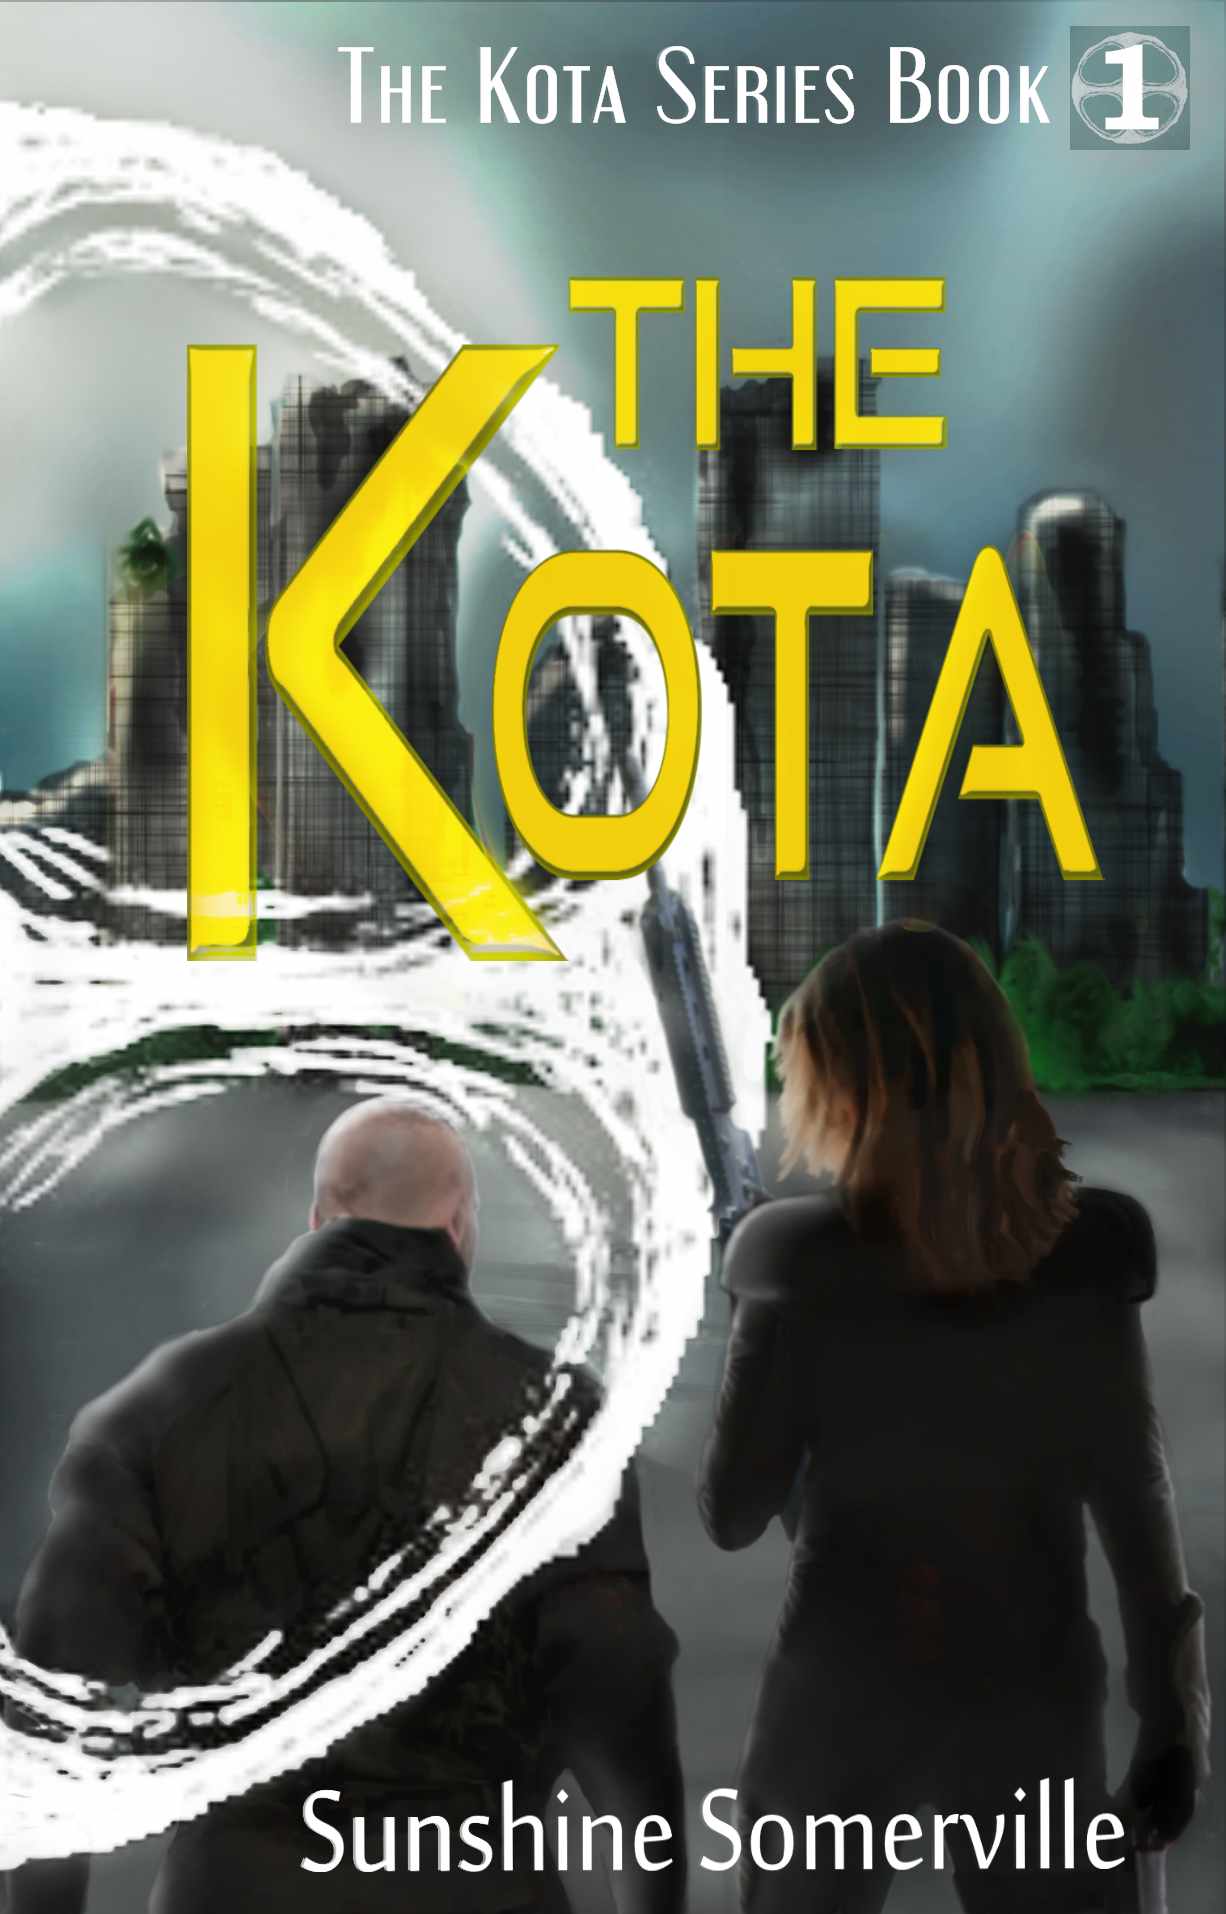 The Kota